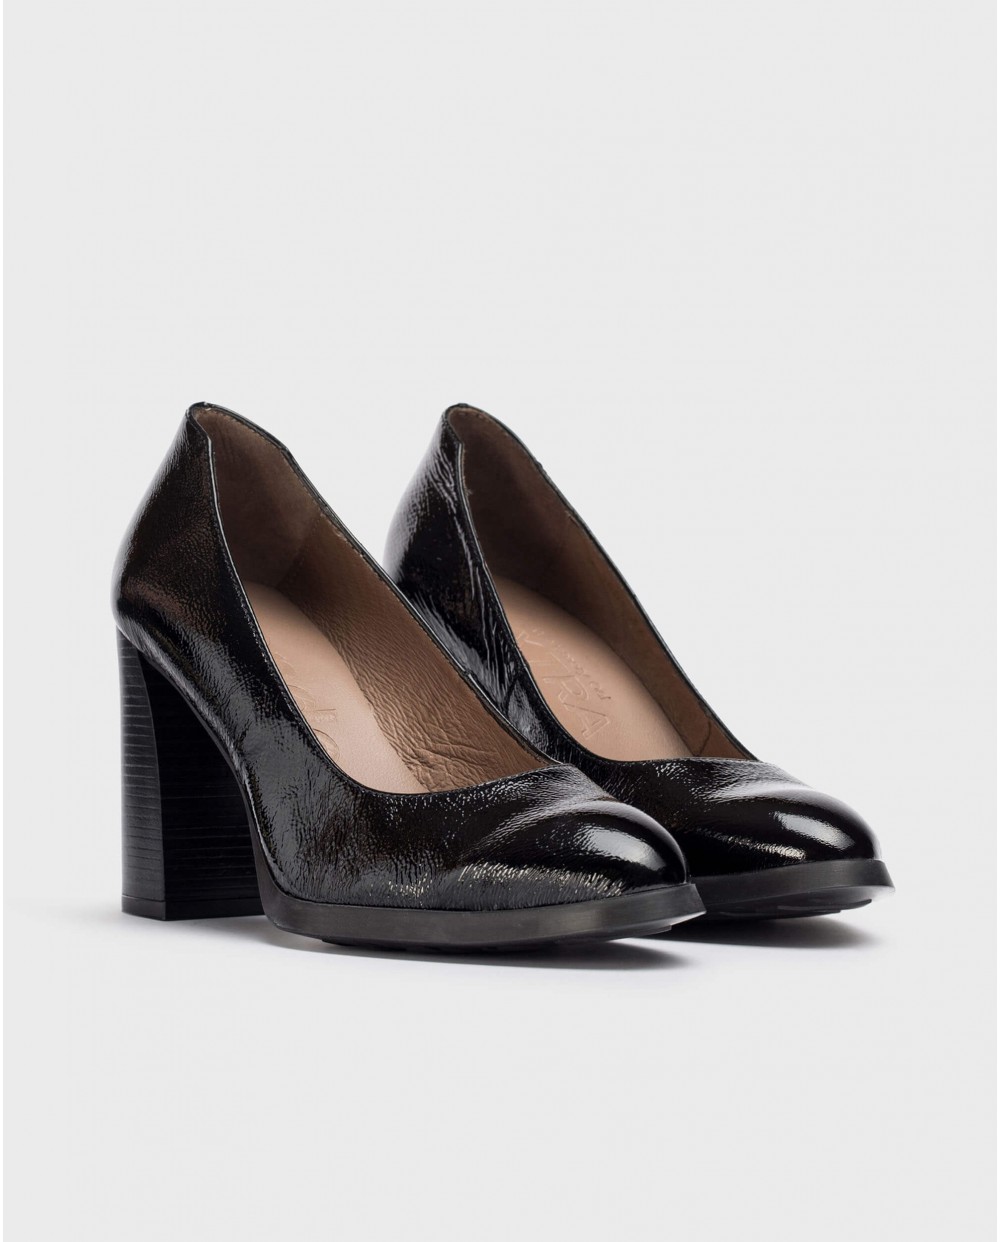 Wonders-Heels-Black TINI shoe